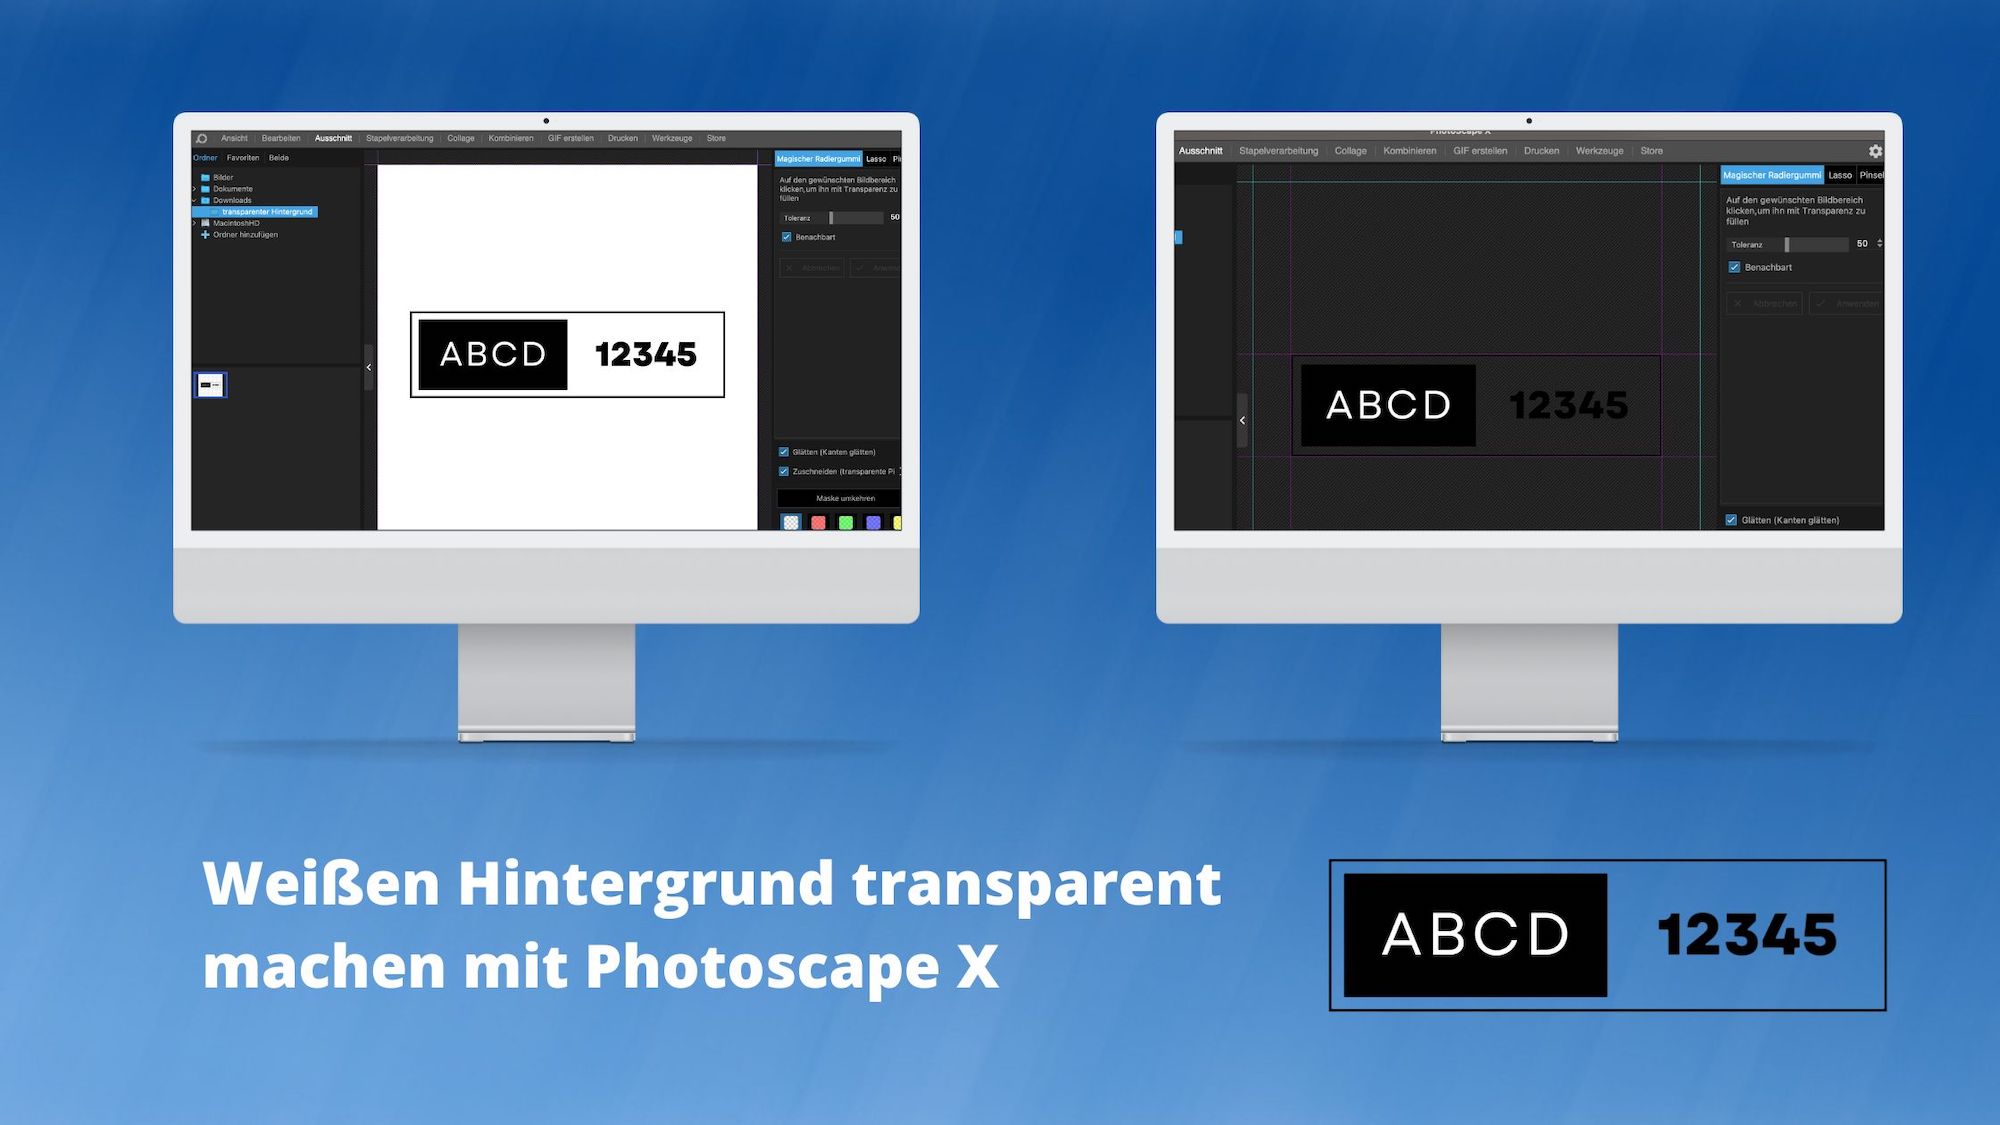 Weißen Hintergrund transparent machen mit Photoscape X